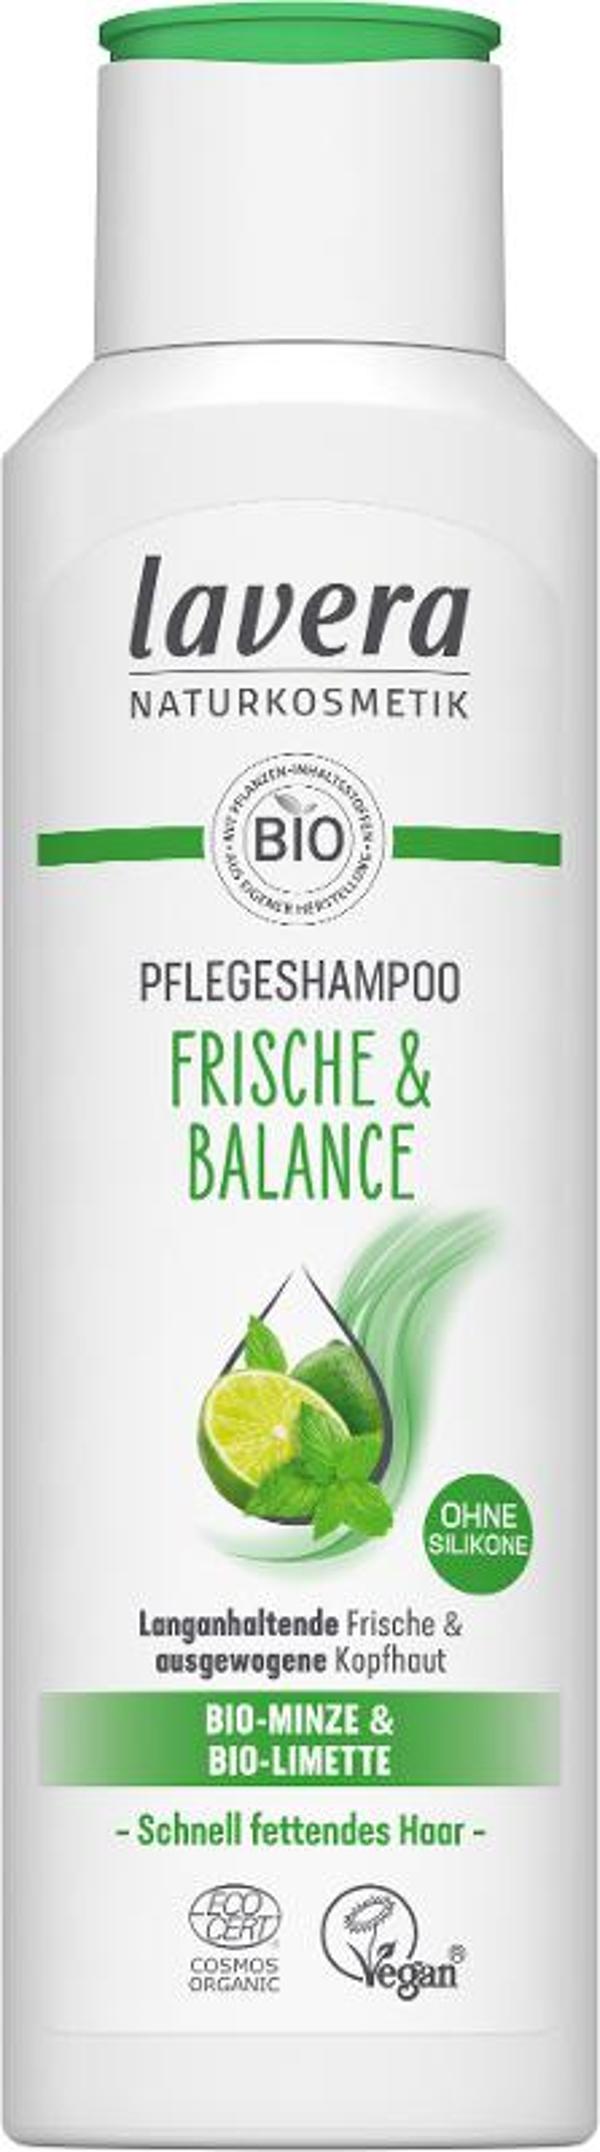 Produktfoto zu Lavera Shampoo Frische und Balance - 250ml